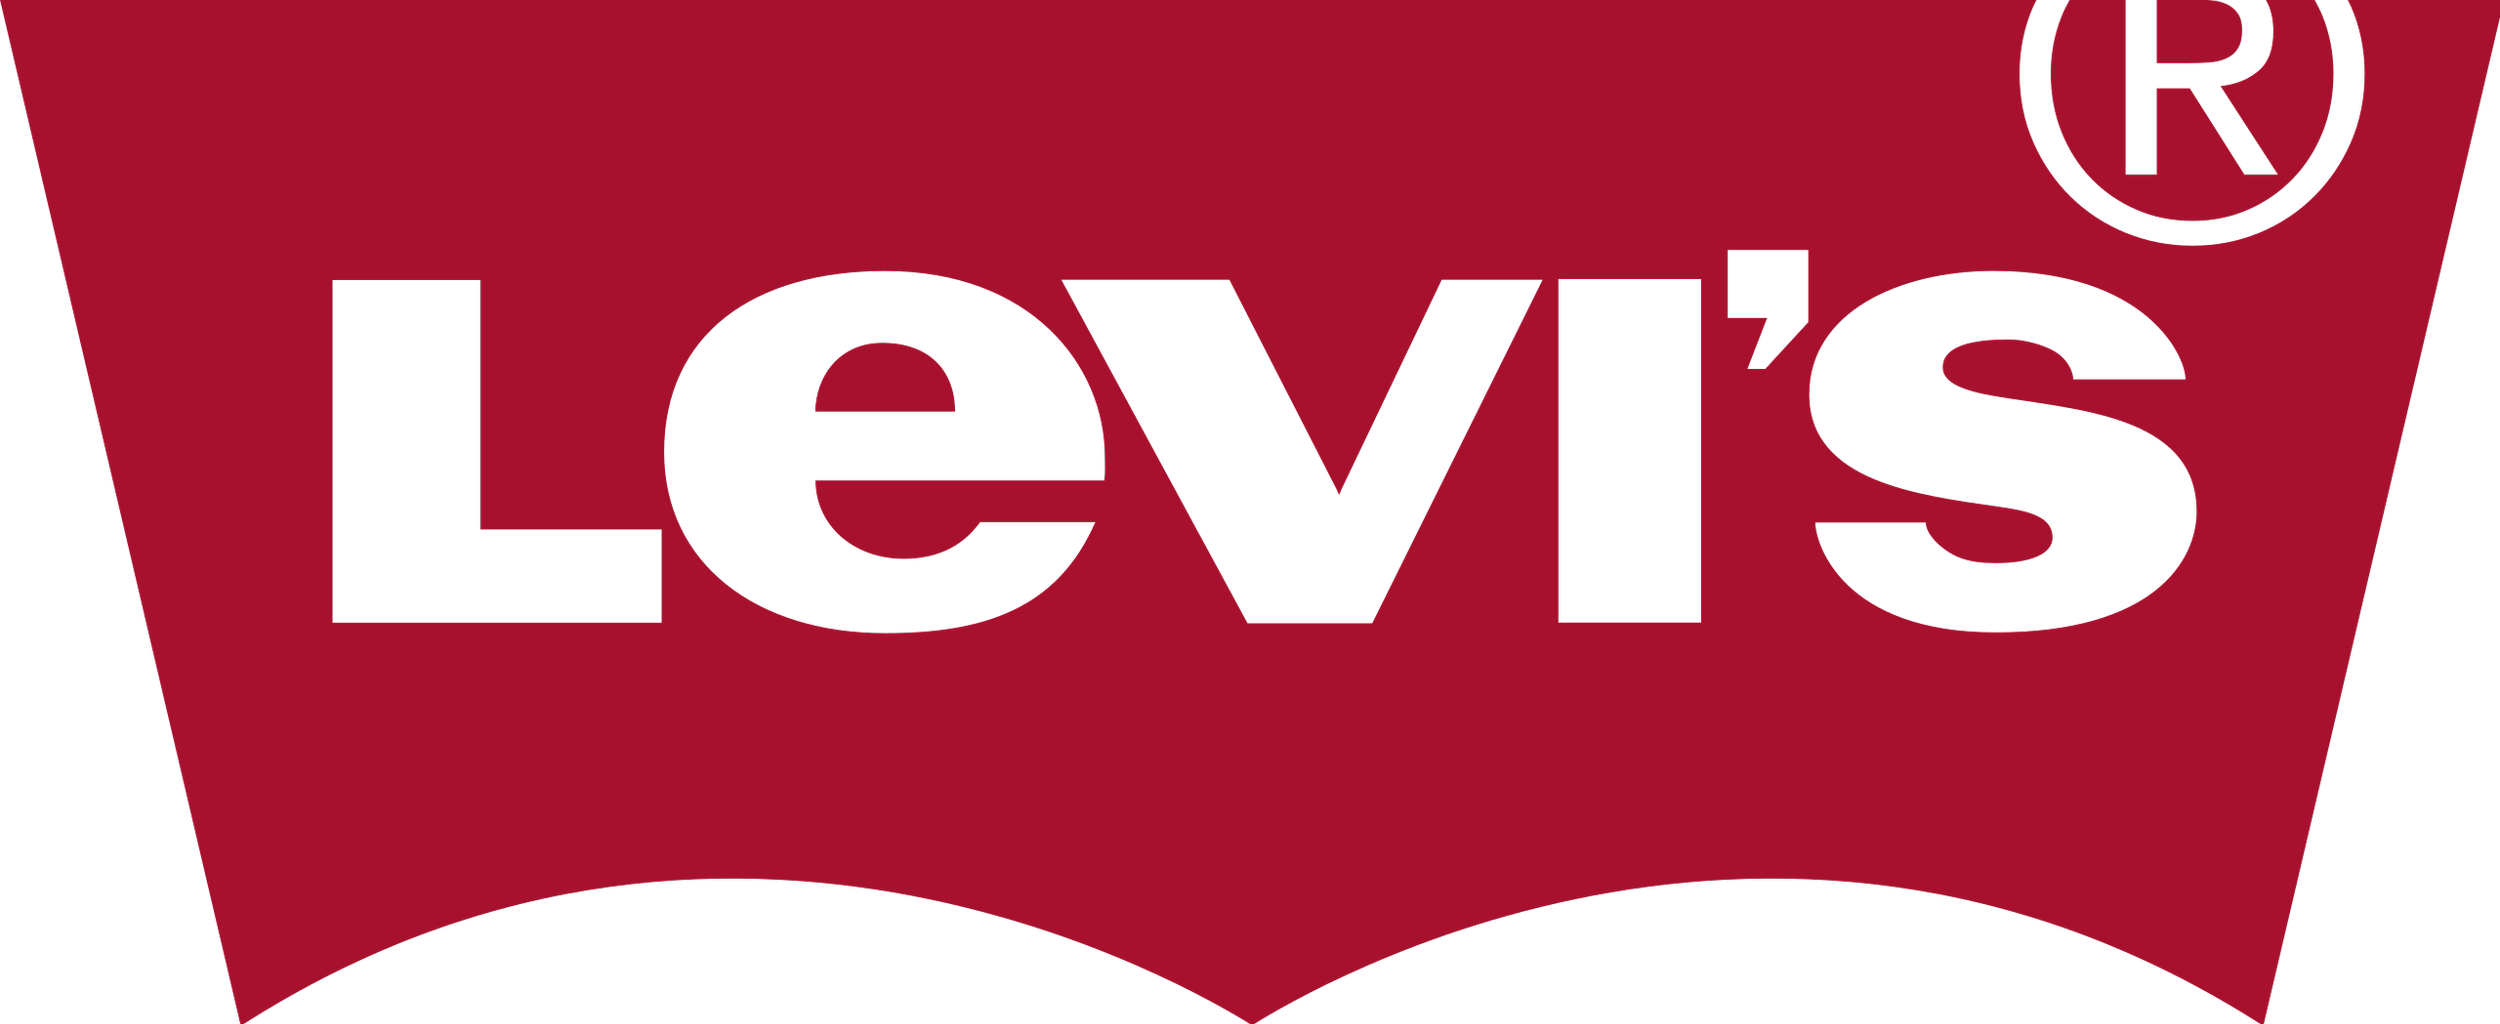 Levis-logo.png